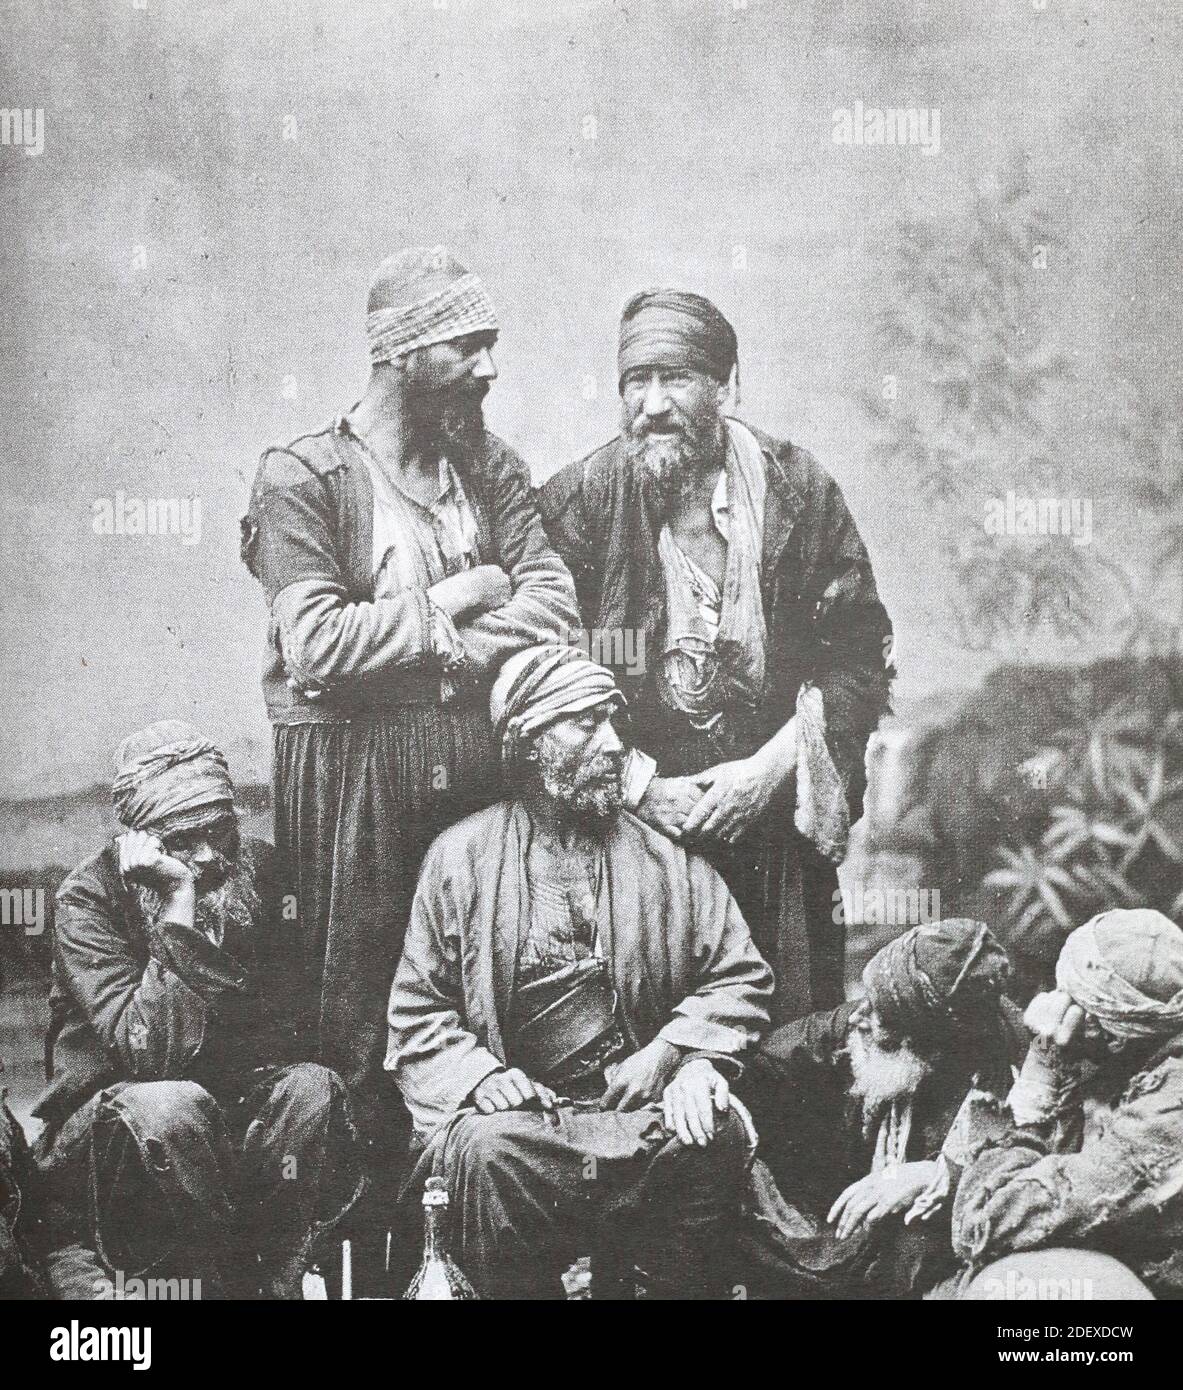 Jews in the Ottoman Empire in 1880. Stock Photo